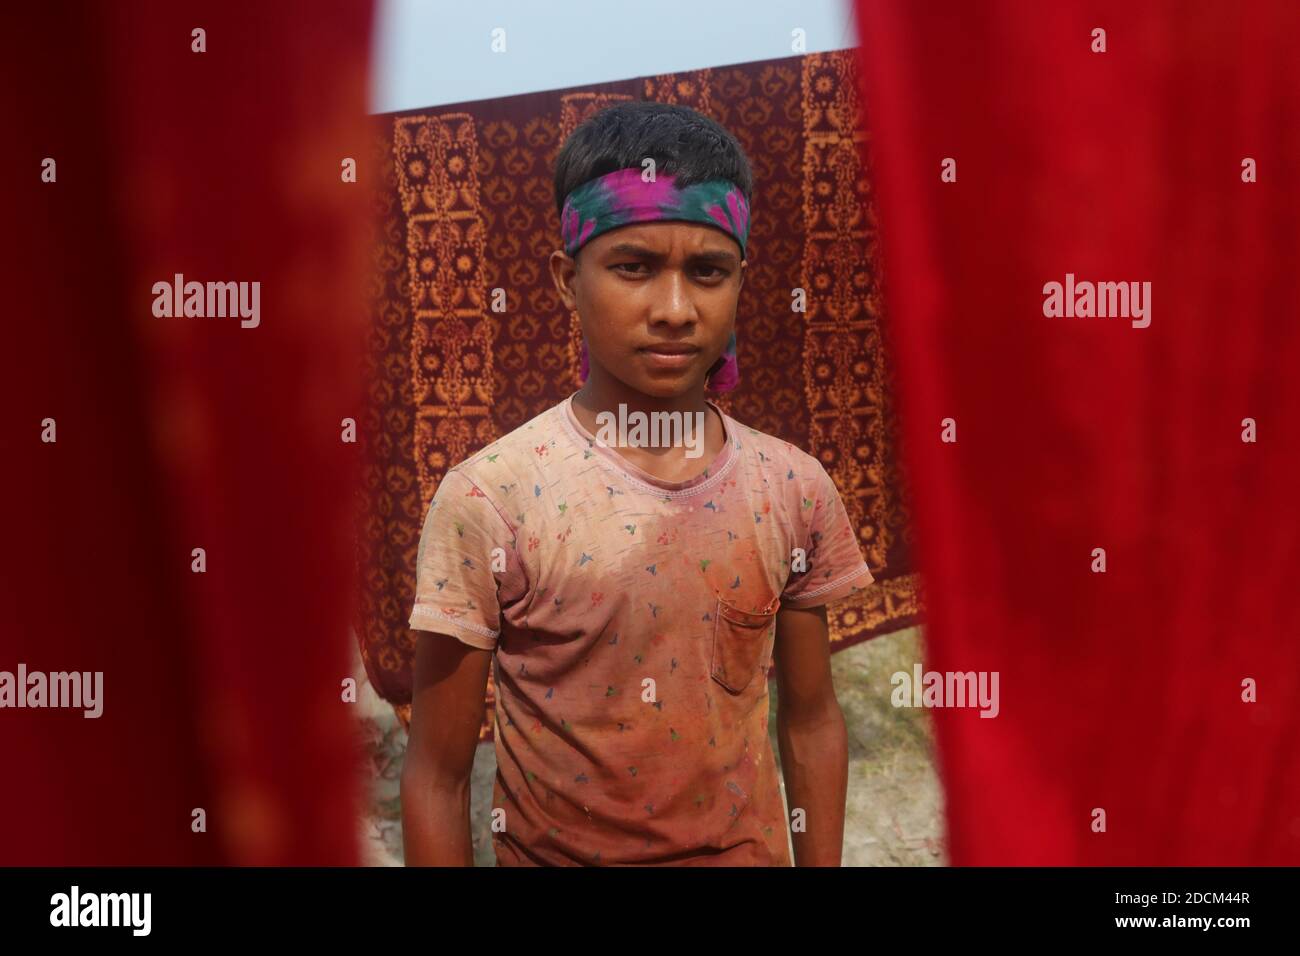 Bangladeschische Arbeiter sammeln Stoffe, nachdem sie sie in einer Färbefabrik in Narayanganj, Bangladesch, unter der Sonne getrocknet haben. Nazmul Islam/Alamy Stock Photo Stockfoto